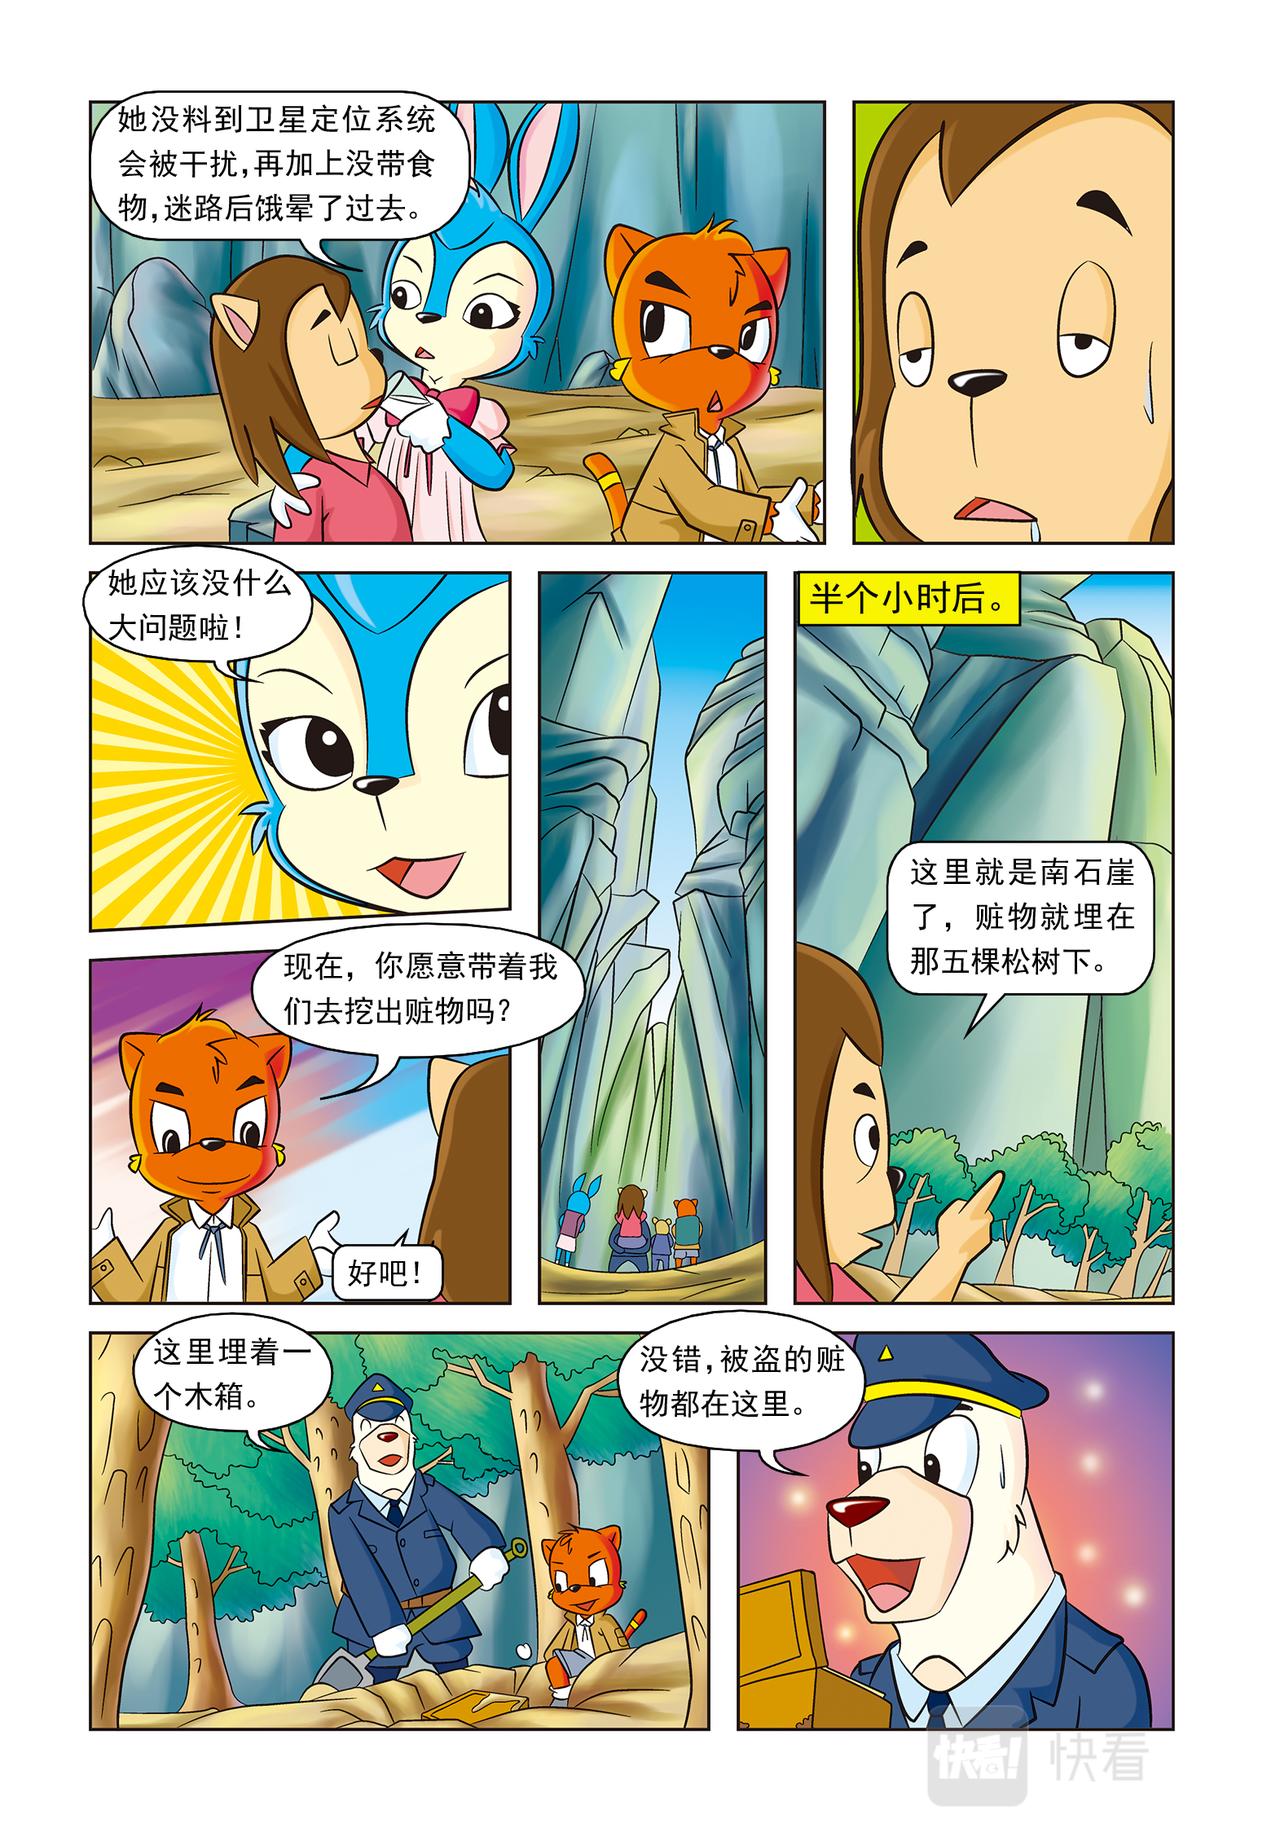 虹猫蓝兔惊险探案系列 - 第十六话神秘绑架案 - 2